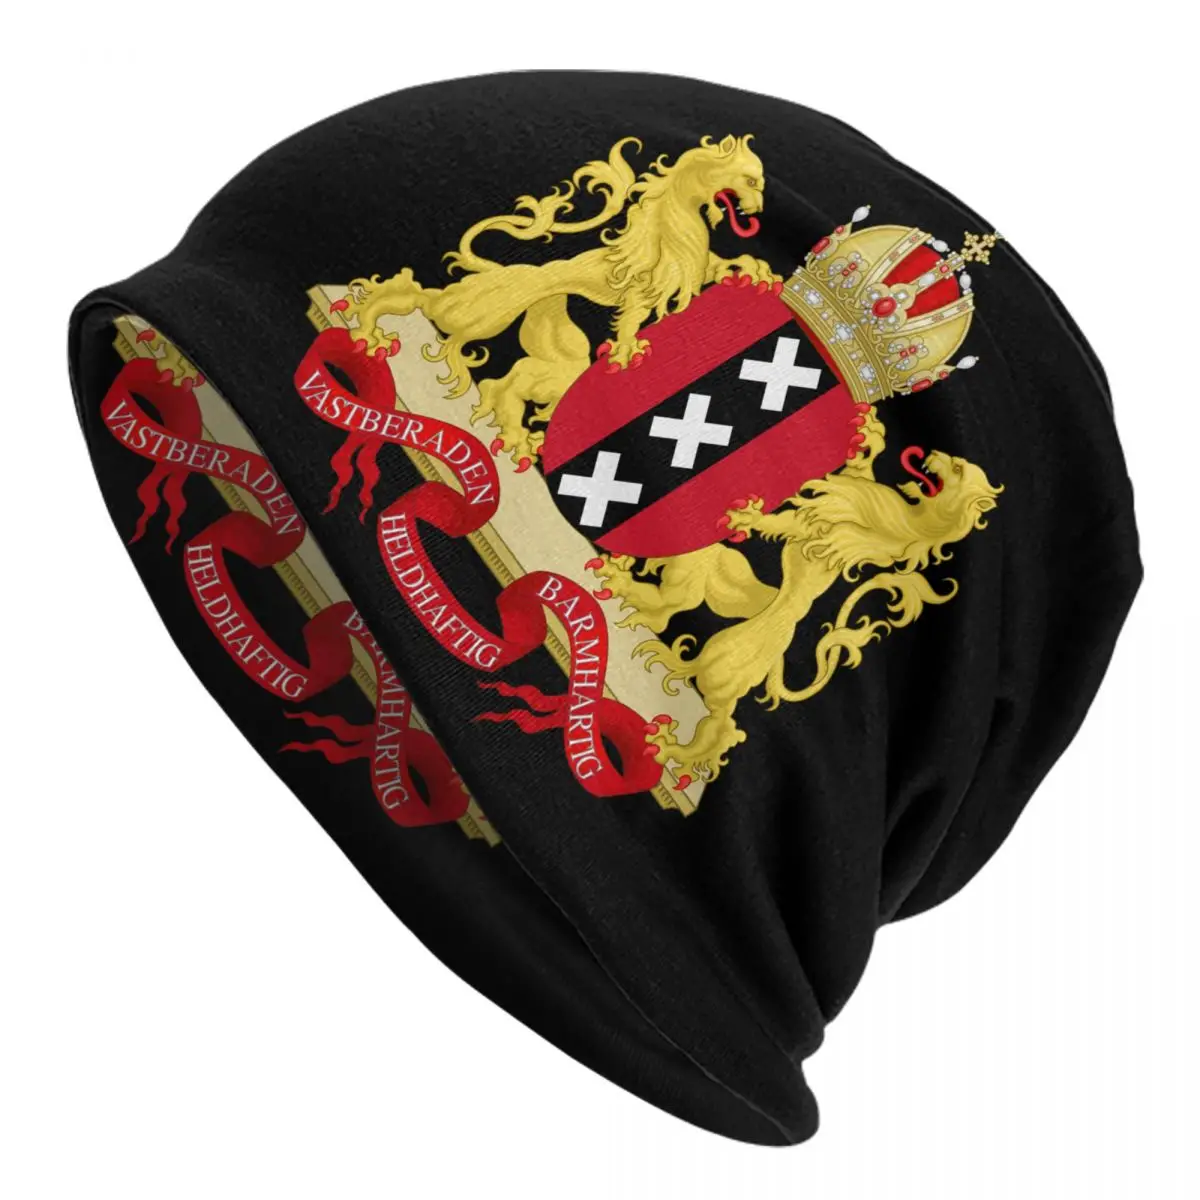 

Шапка-бини унисекс, теплый вязаный головной убор в стиле хип-хоп, голландский, зимний, герб Амстердам